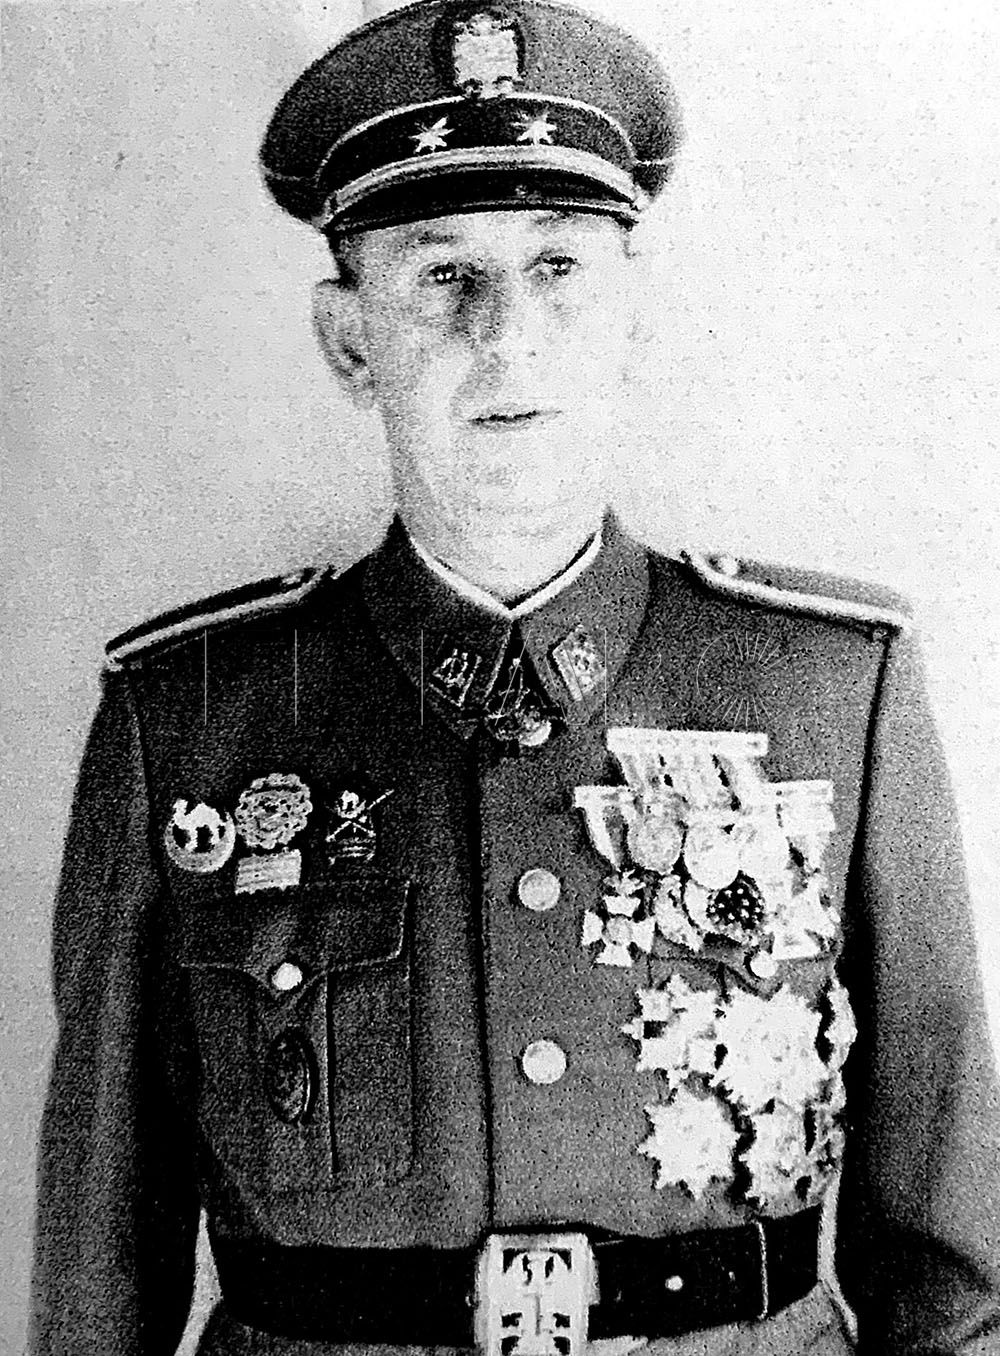 El coronel Francisco Mena Díaz en 1957 como jefe de la Policía de Ifni y delegado gubernativo